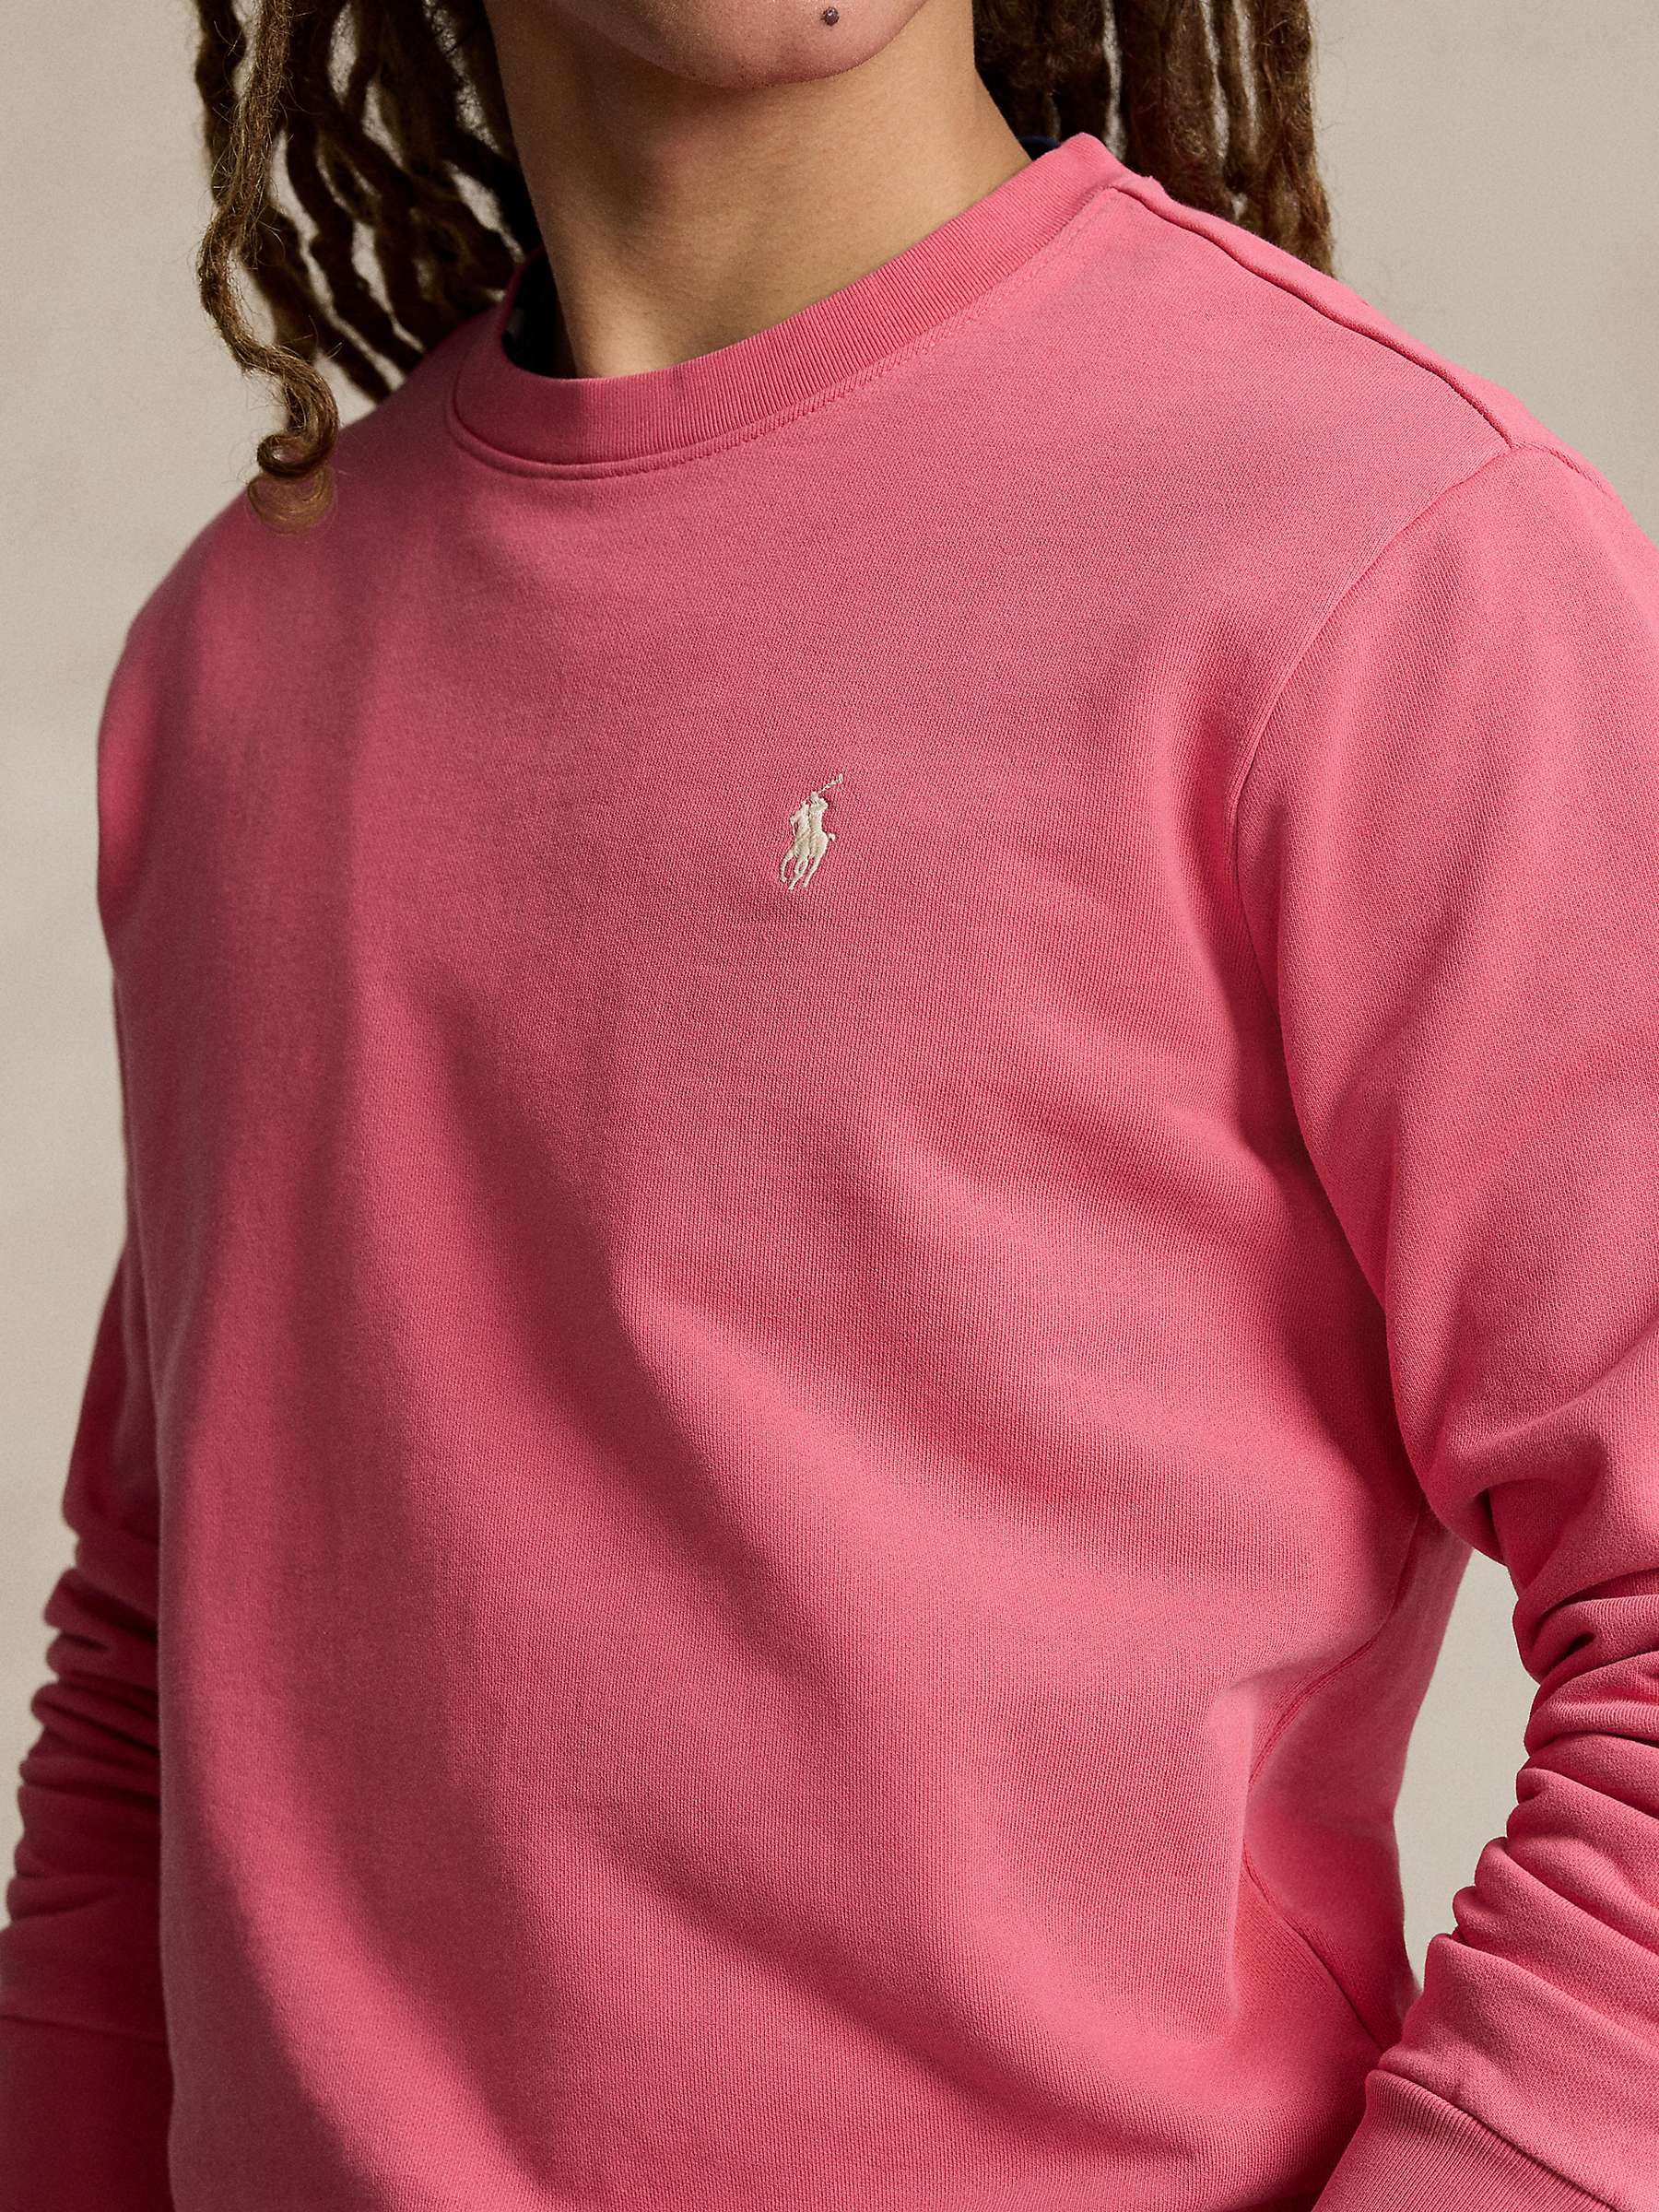 Buy Ralph Lauren Loopback Cotton Fleece Sweatshirt Online at johnlewis.com